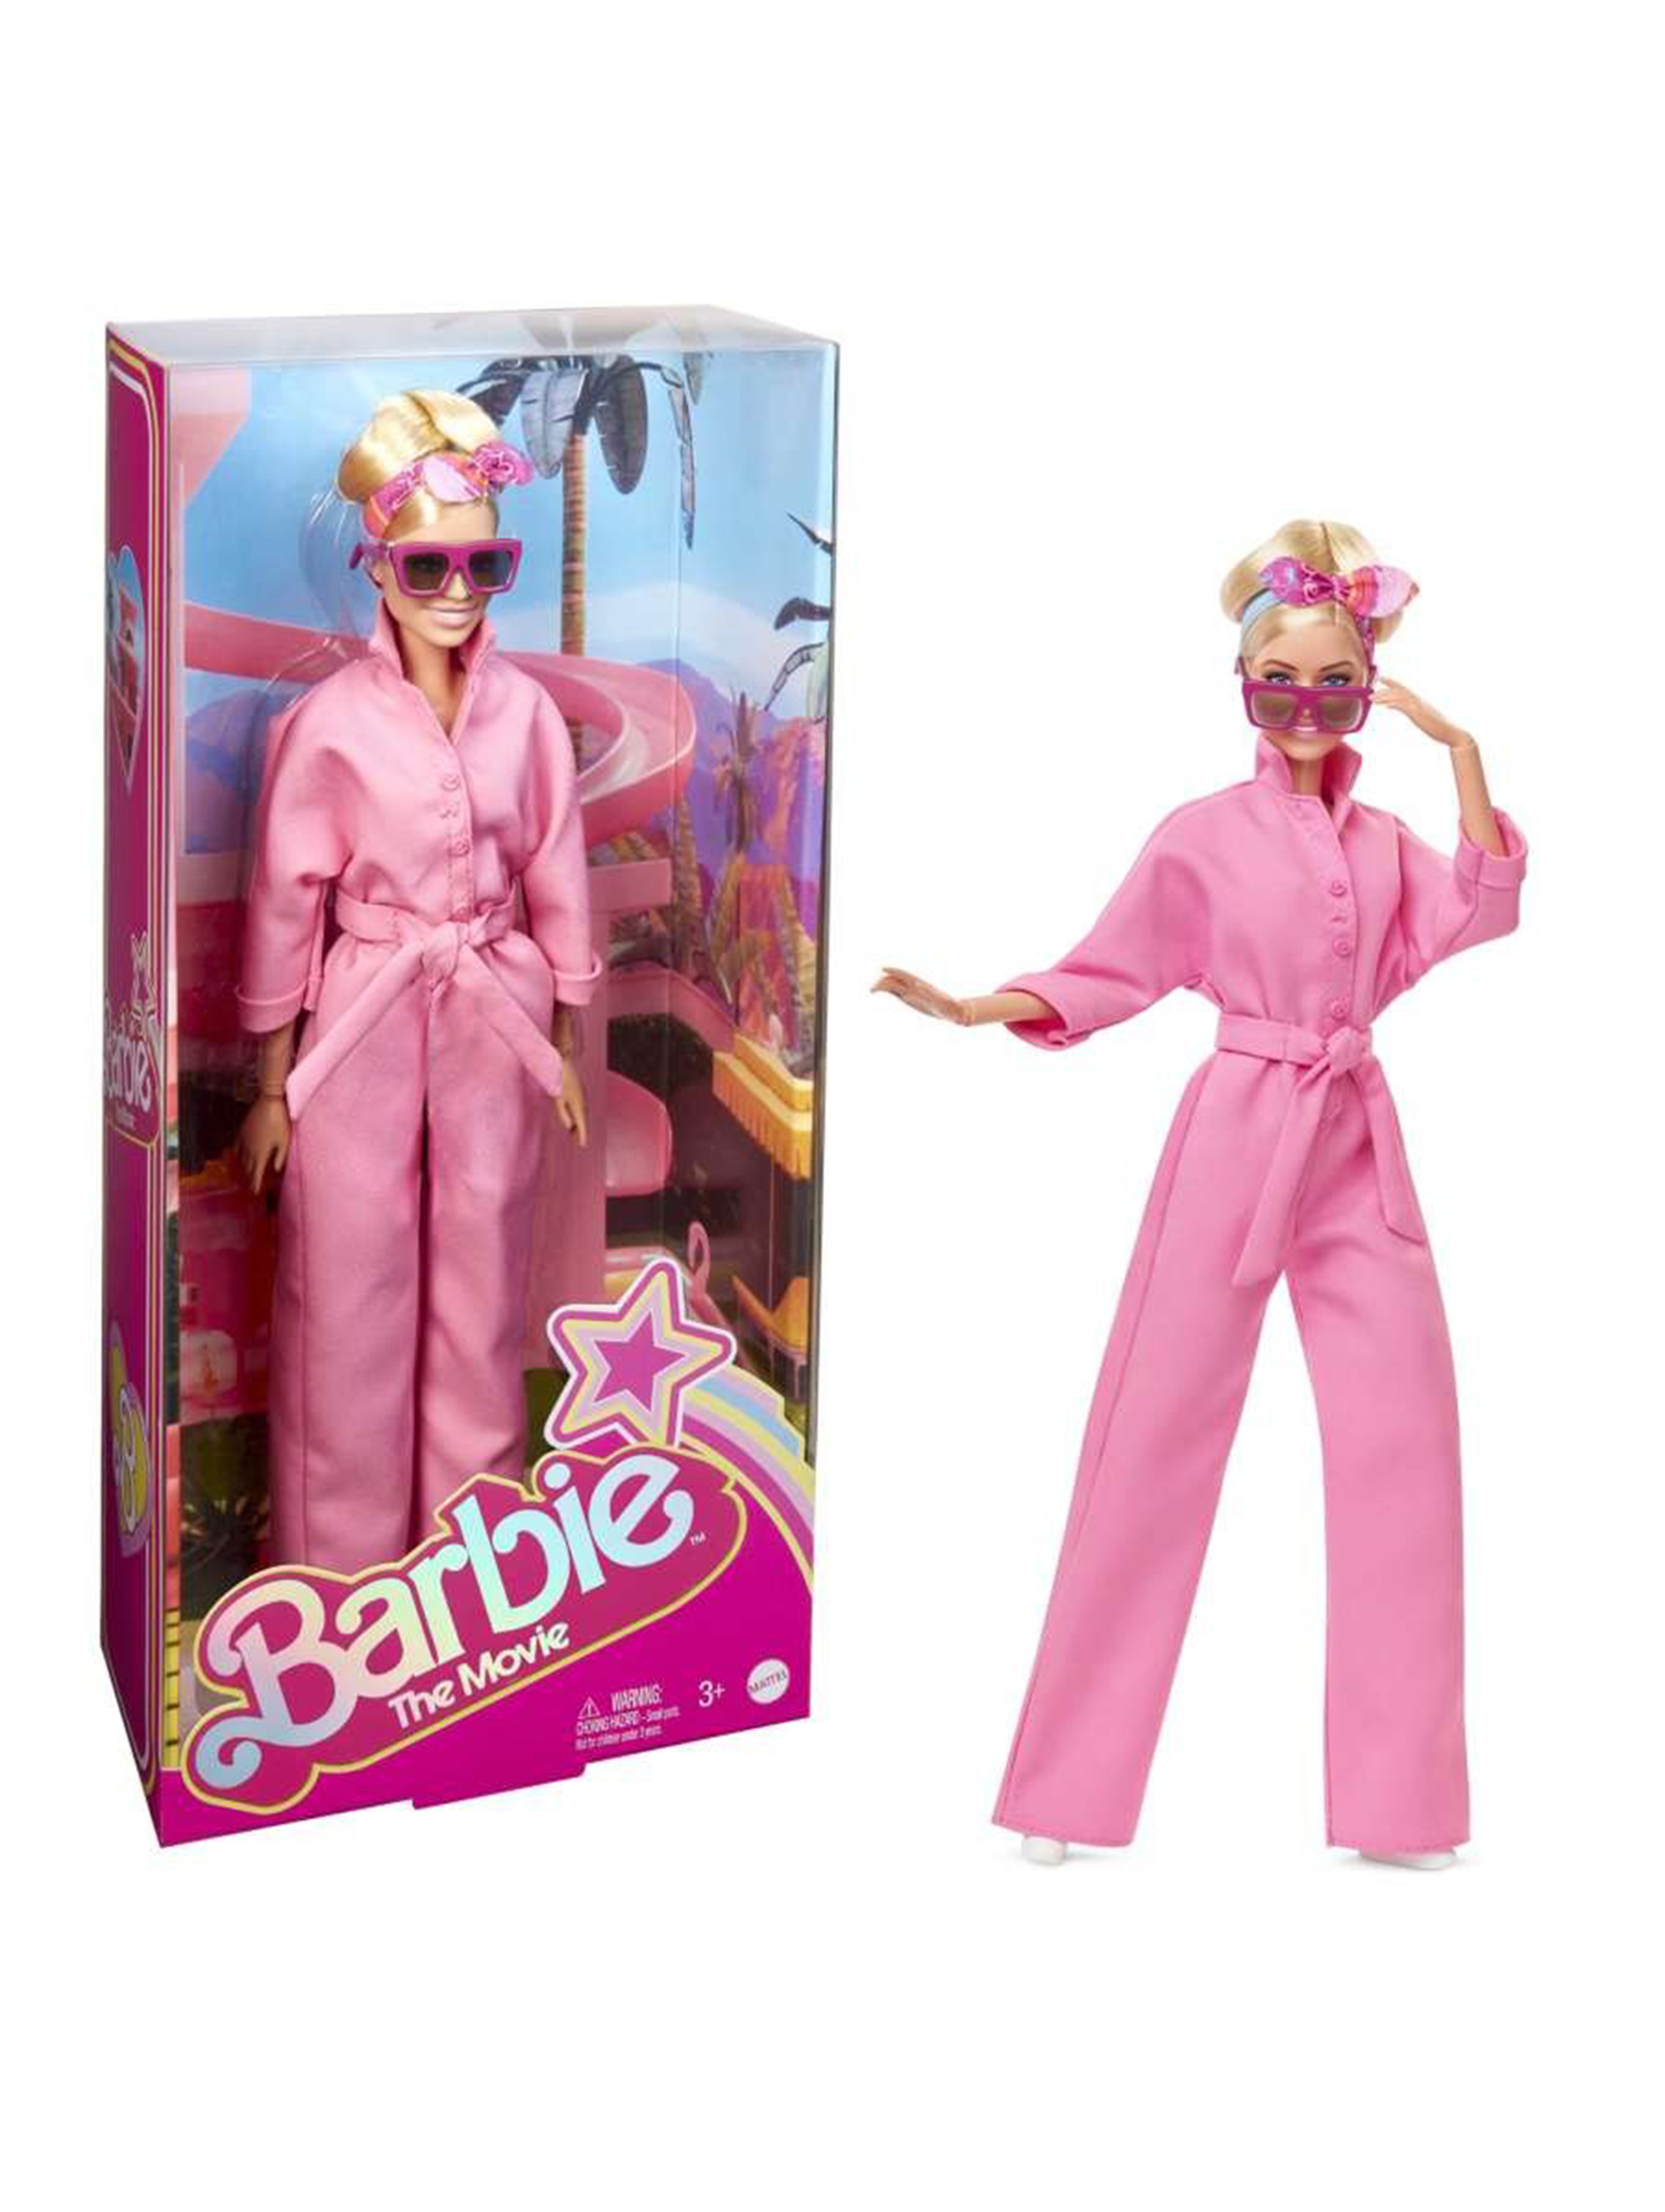 Lalka Barbie The Movie Margot Robbie jako Barbie